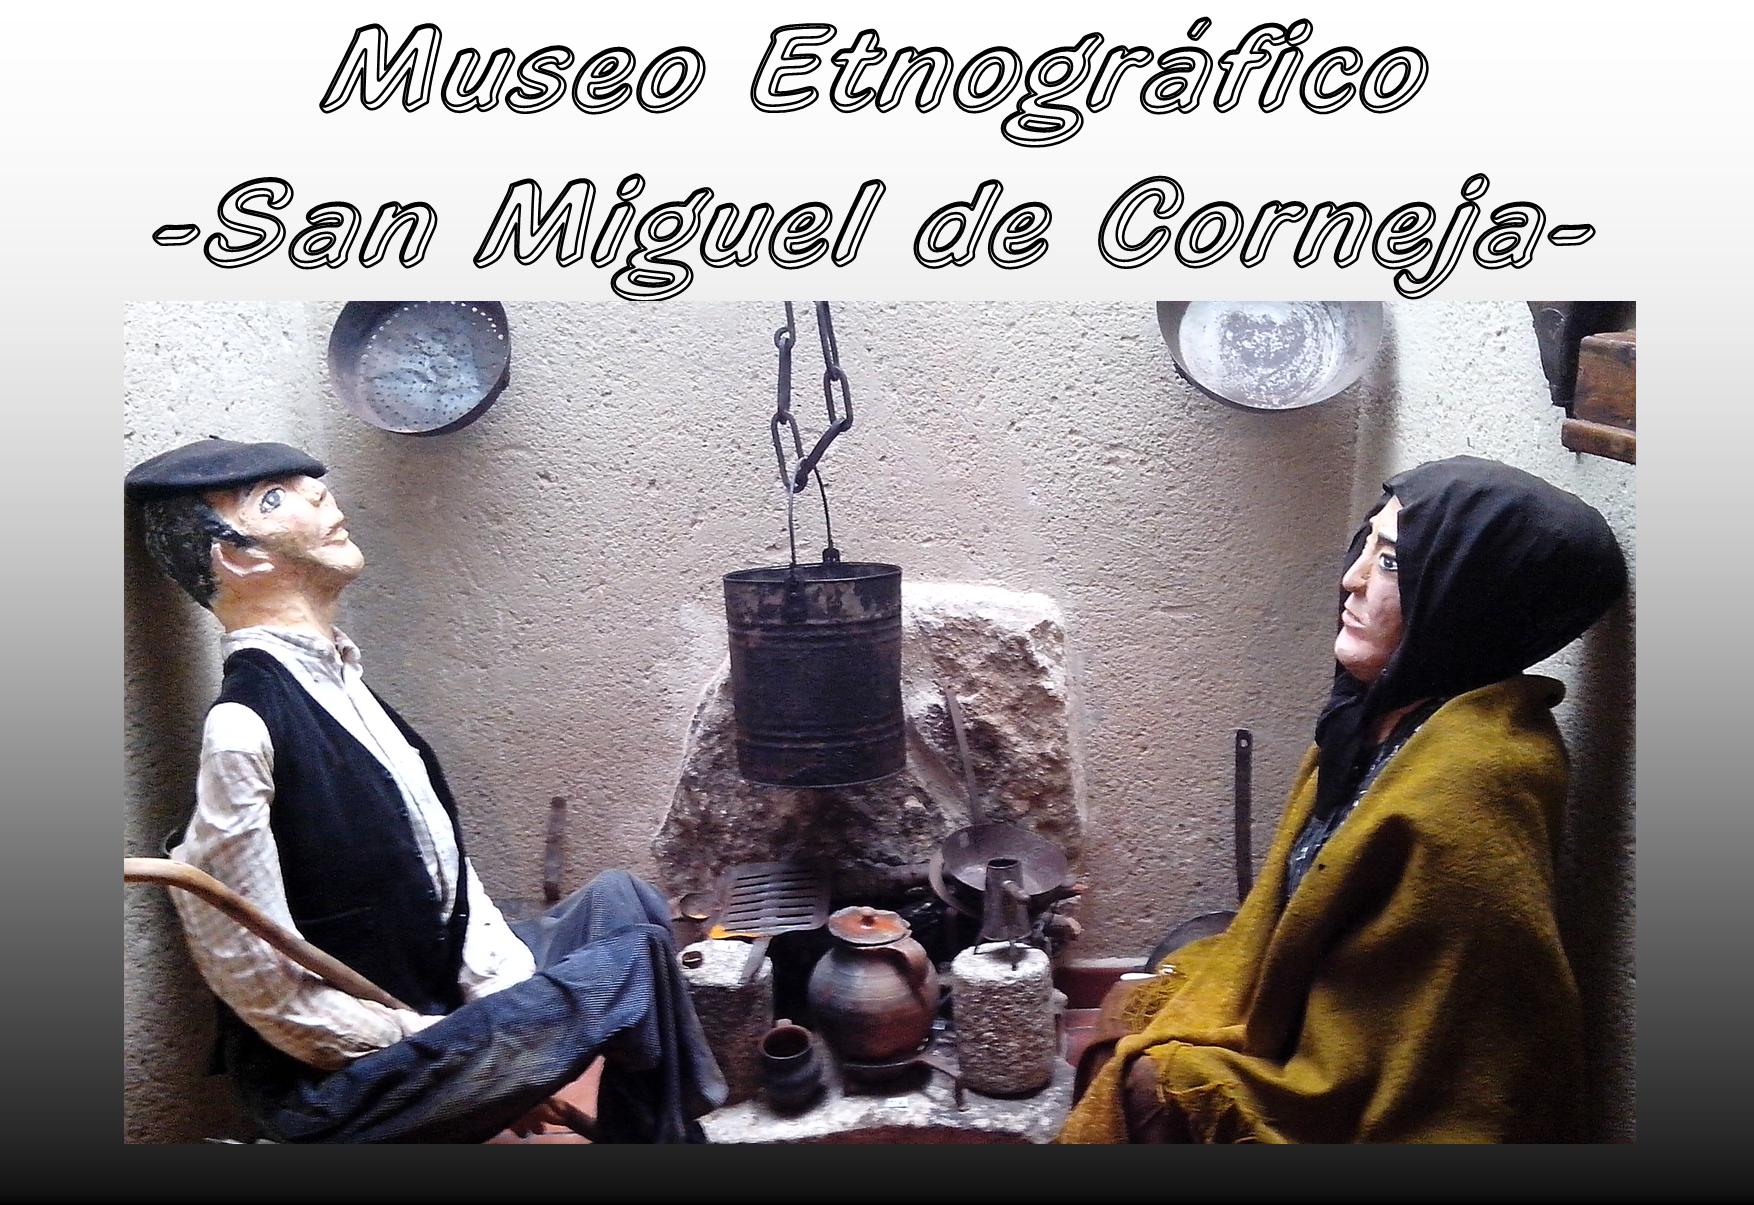 Museo etnográfico San Miguel de Corneja